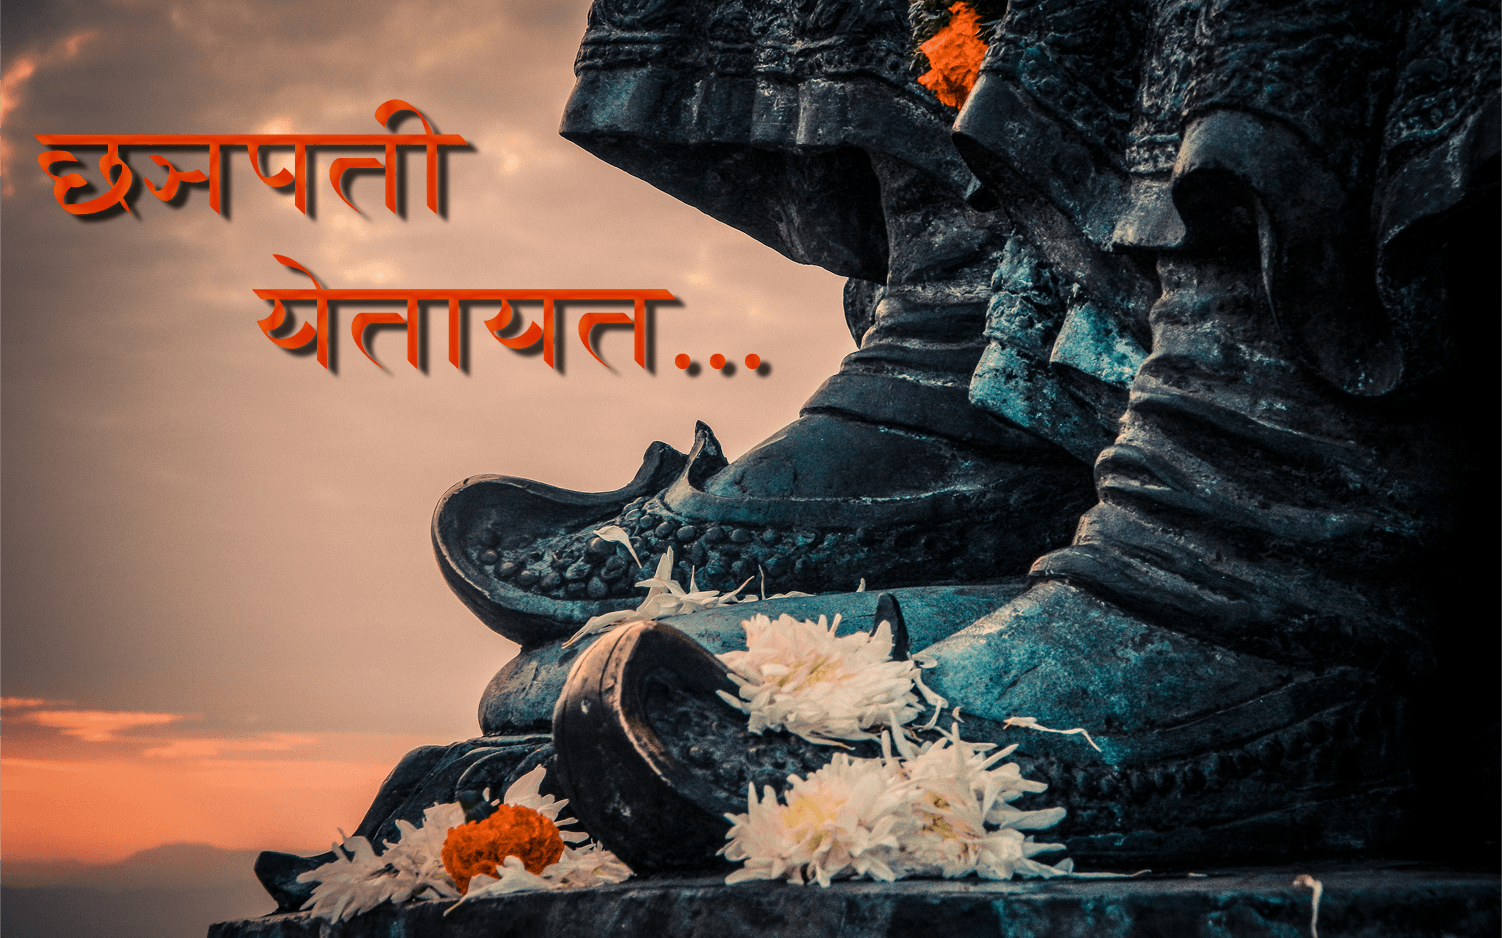 Shivaji maharaj photo hd 2017 download with marathi msg